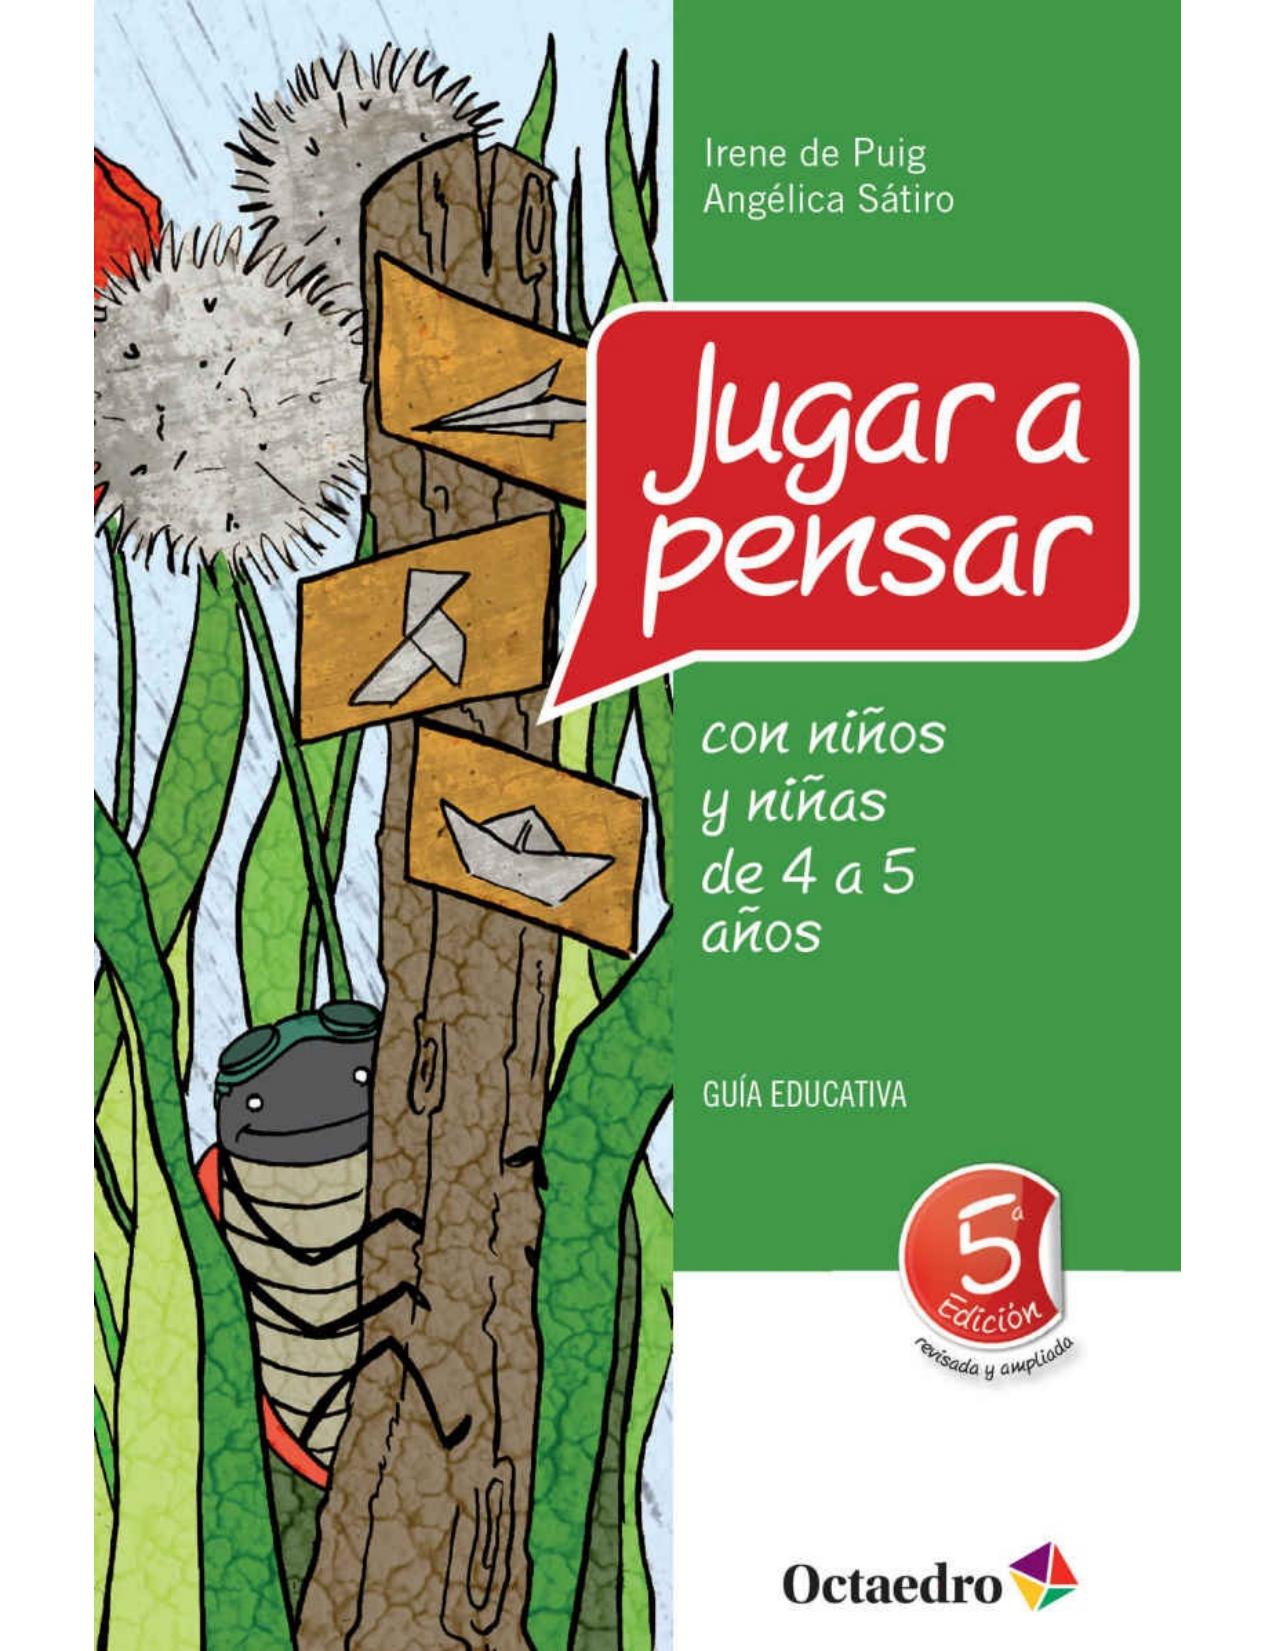 JUGAR A PENSAR CON NINOS Y NINAS DE 4 A 5 ANOS;GUIA EDUCATIVA